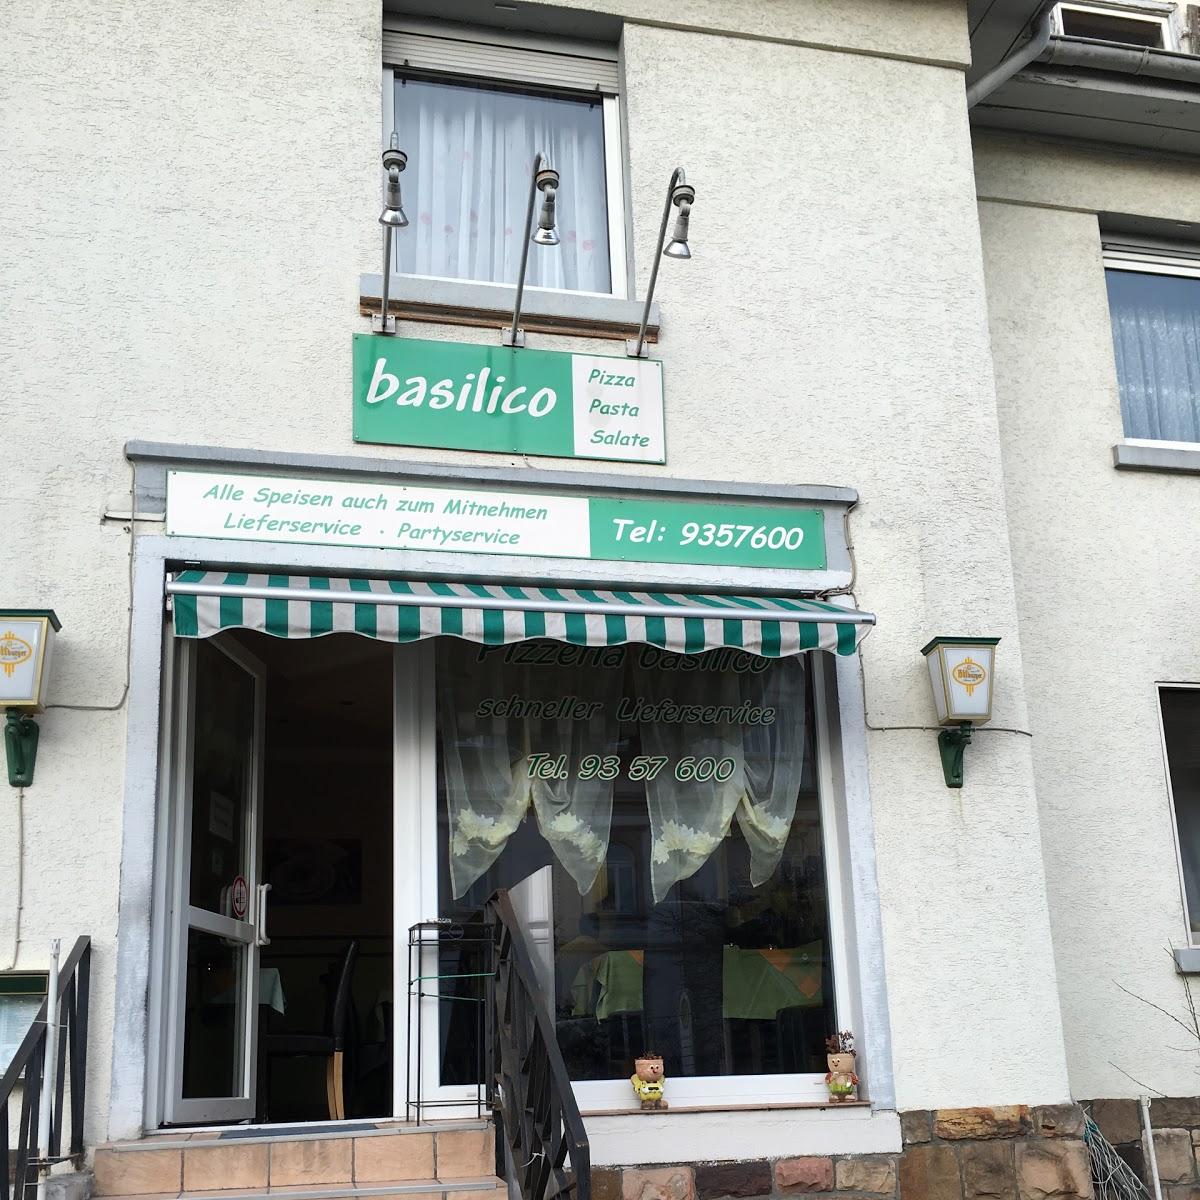 Restaurant "Pizza Basilico Ascione" in Bad Nauheim